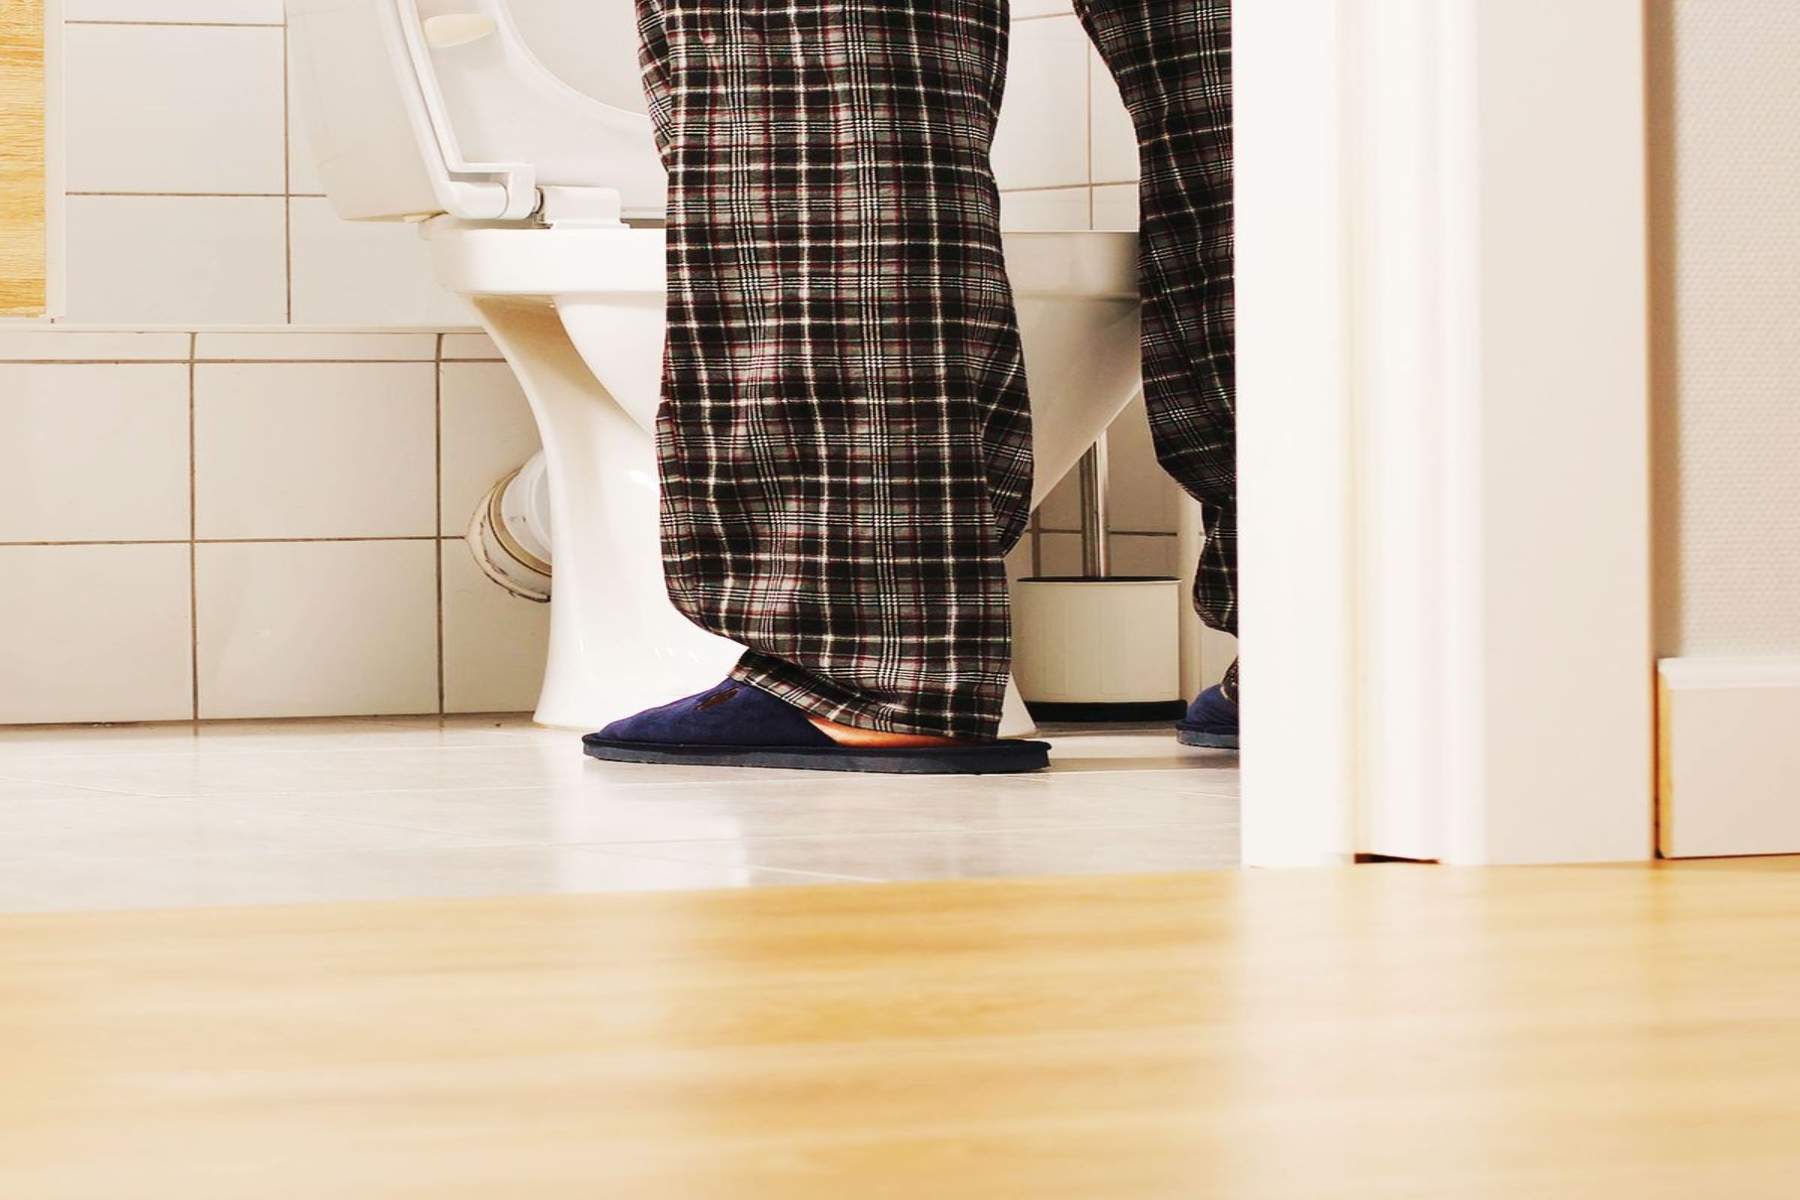 Προστάτης πάθηση: Παθήσεις του προστάτη ως ο λόγος που πηγαίνετε συχνά τουαλέτα